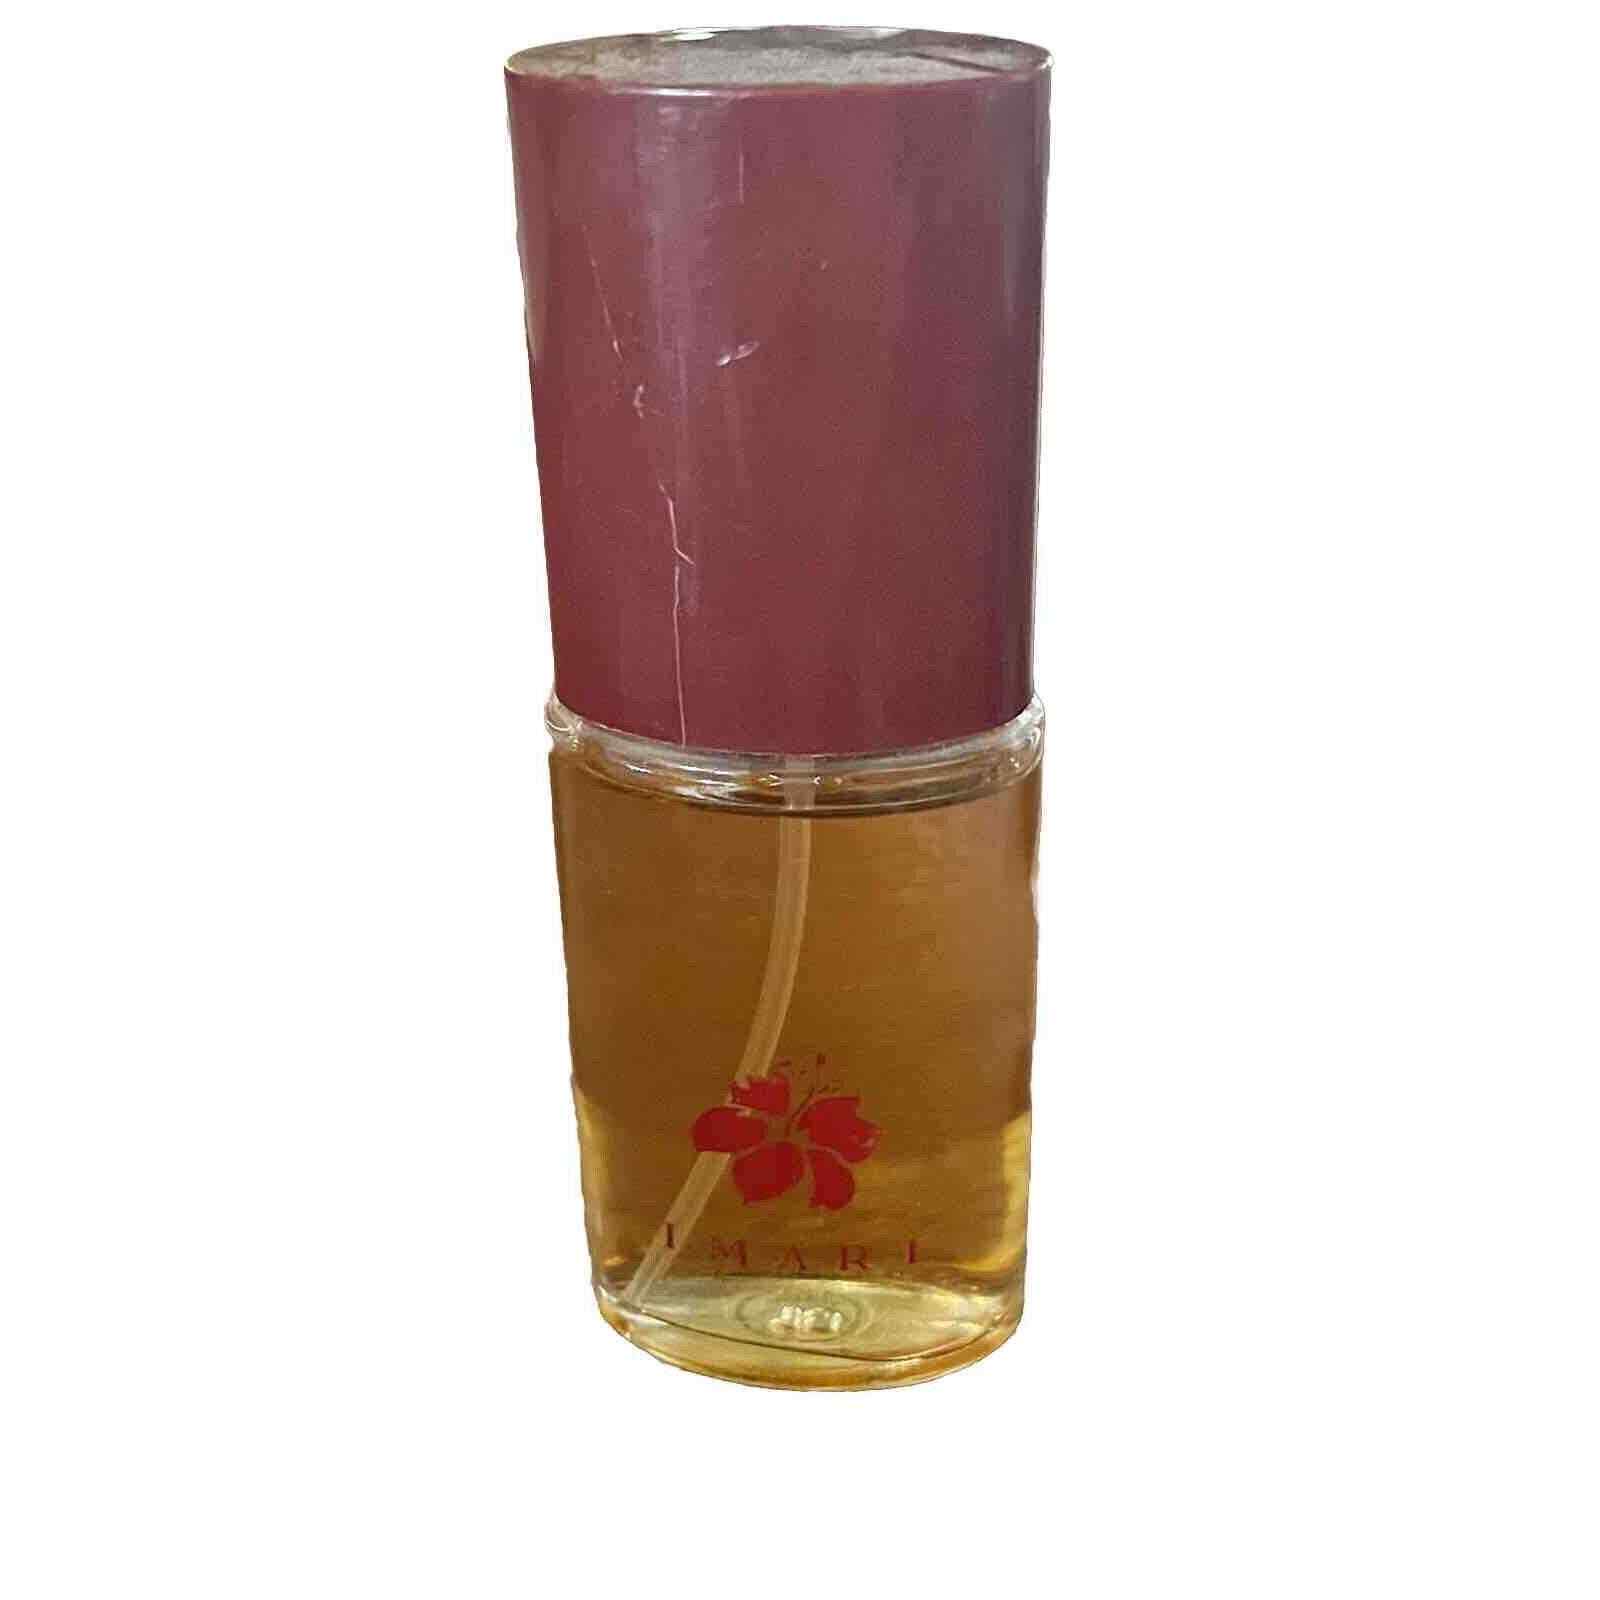 Avon Imari Vintage Eau De Cologne Spray 1 fl oz 30 ml Perfume